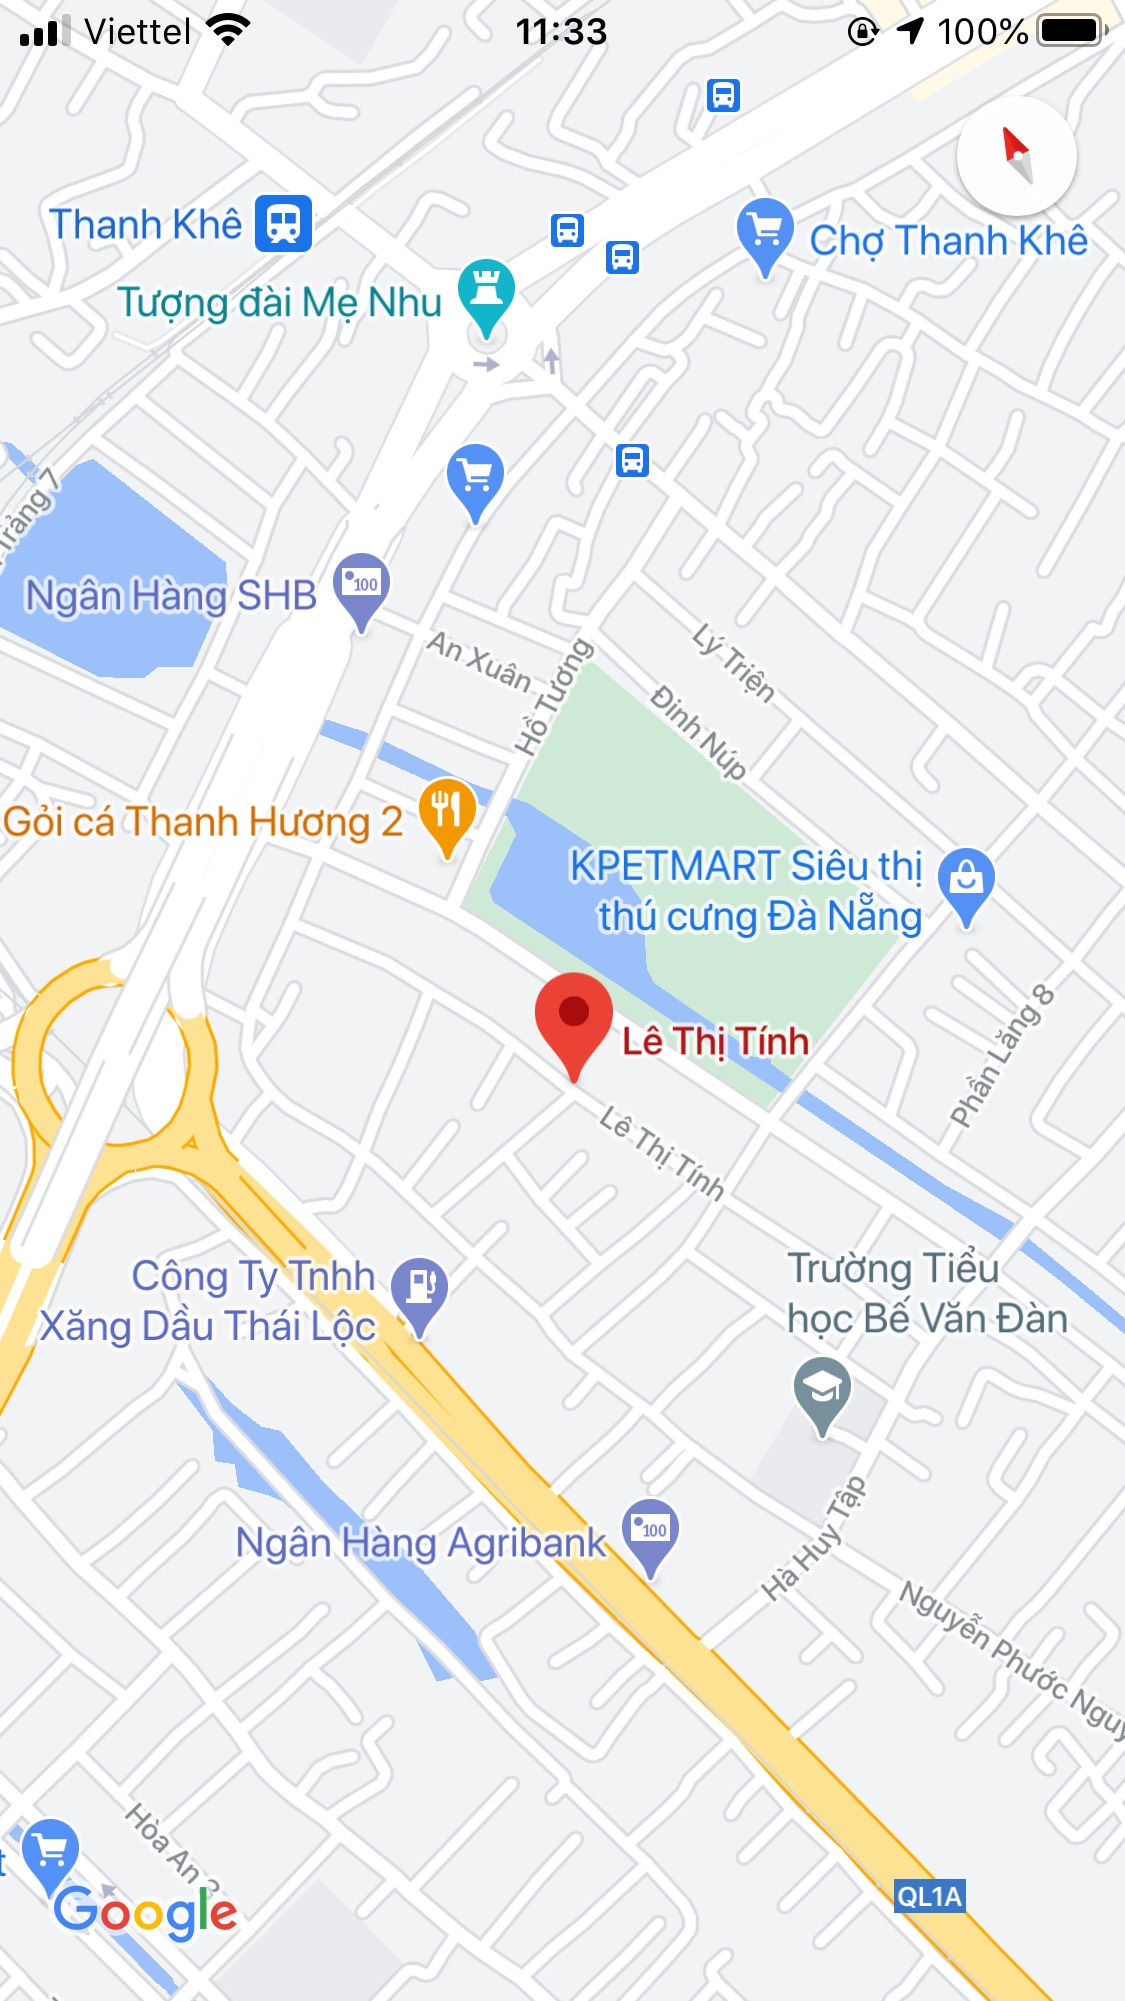 Bán đất đường Lê Thị Tính khu Phần Lăng, Thanh Khê, Đà Nẵng. DT: 92.5 m2. Giá: 4.2 tỷ